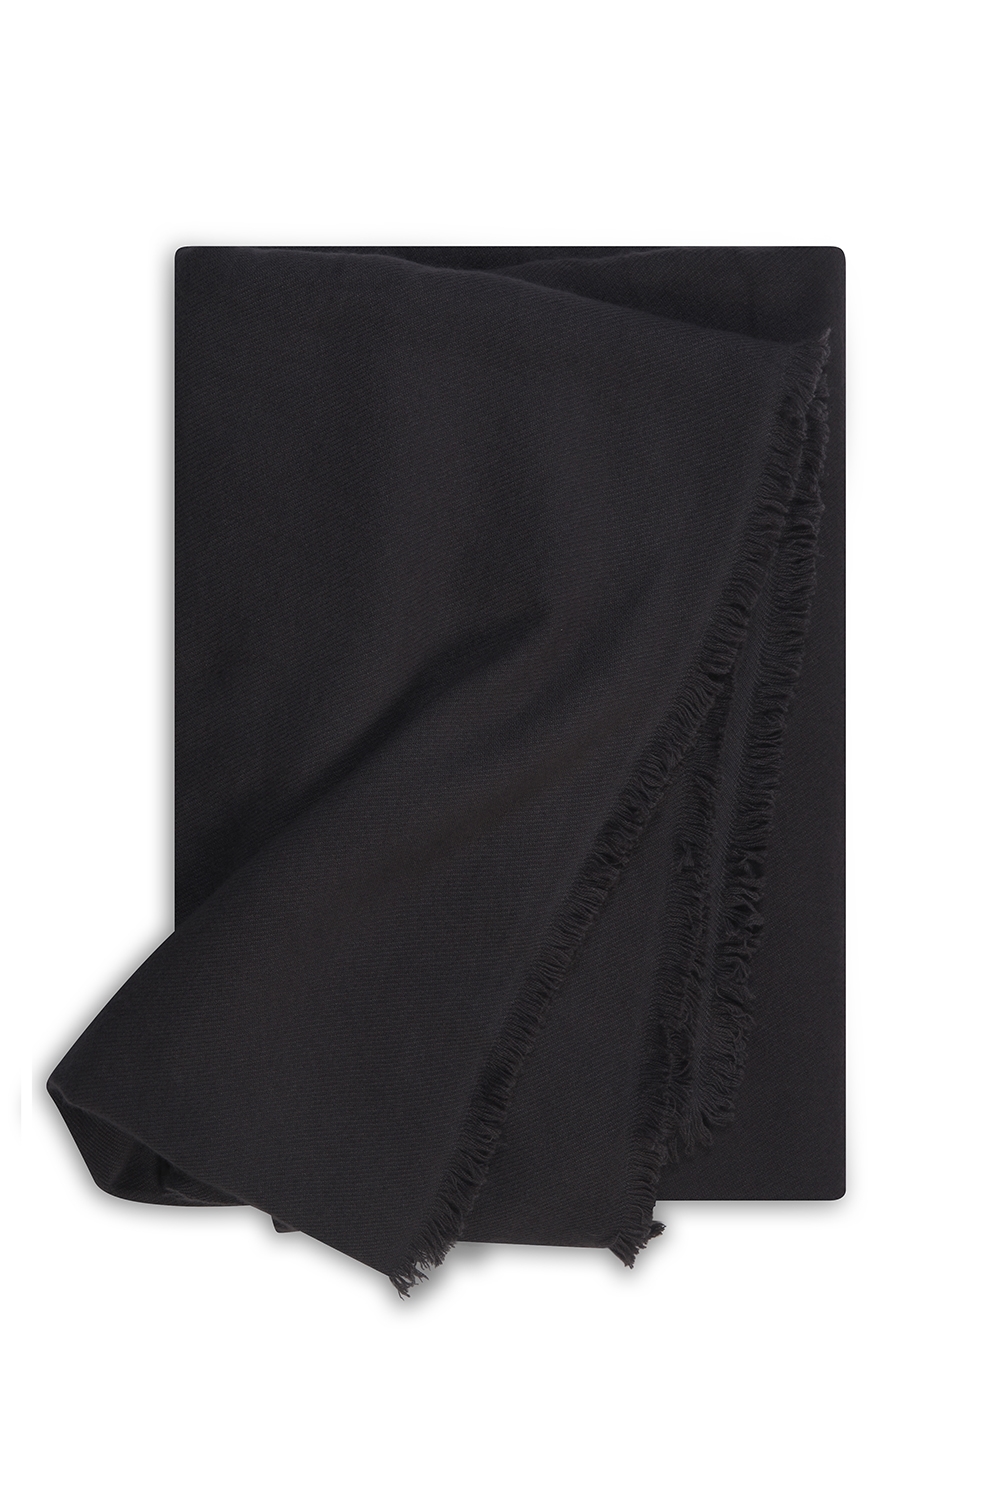 Cachemire accessoires couvertures plaids toodoo plain xl 240 x 260 carbon 240 x 260 cm